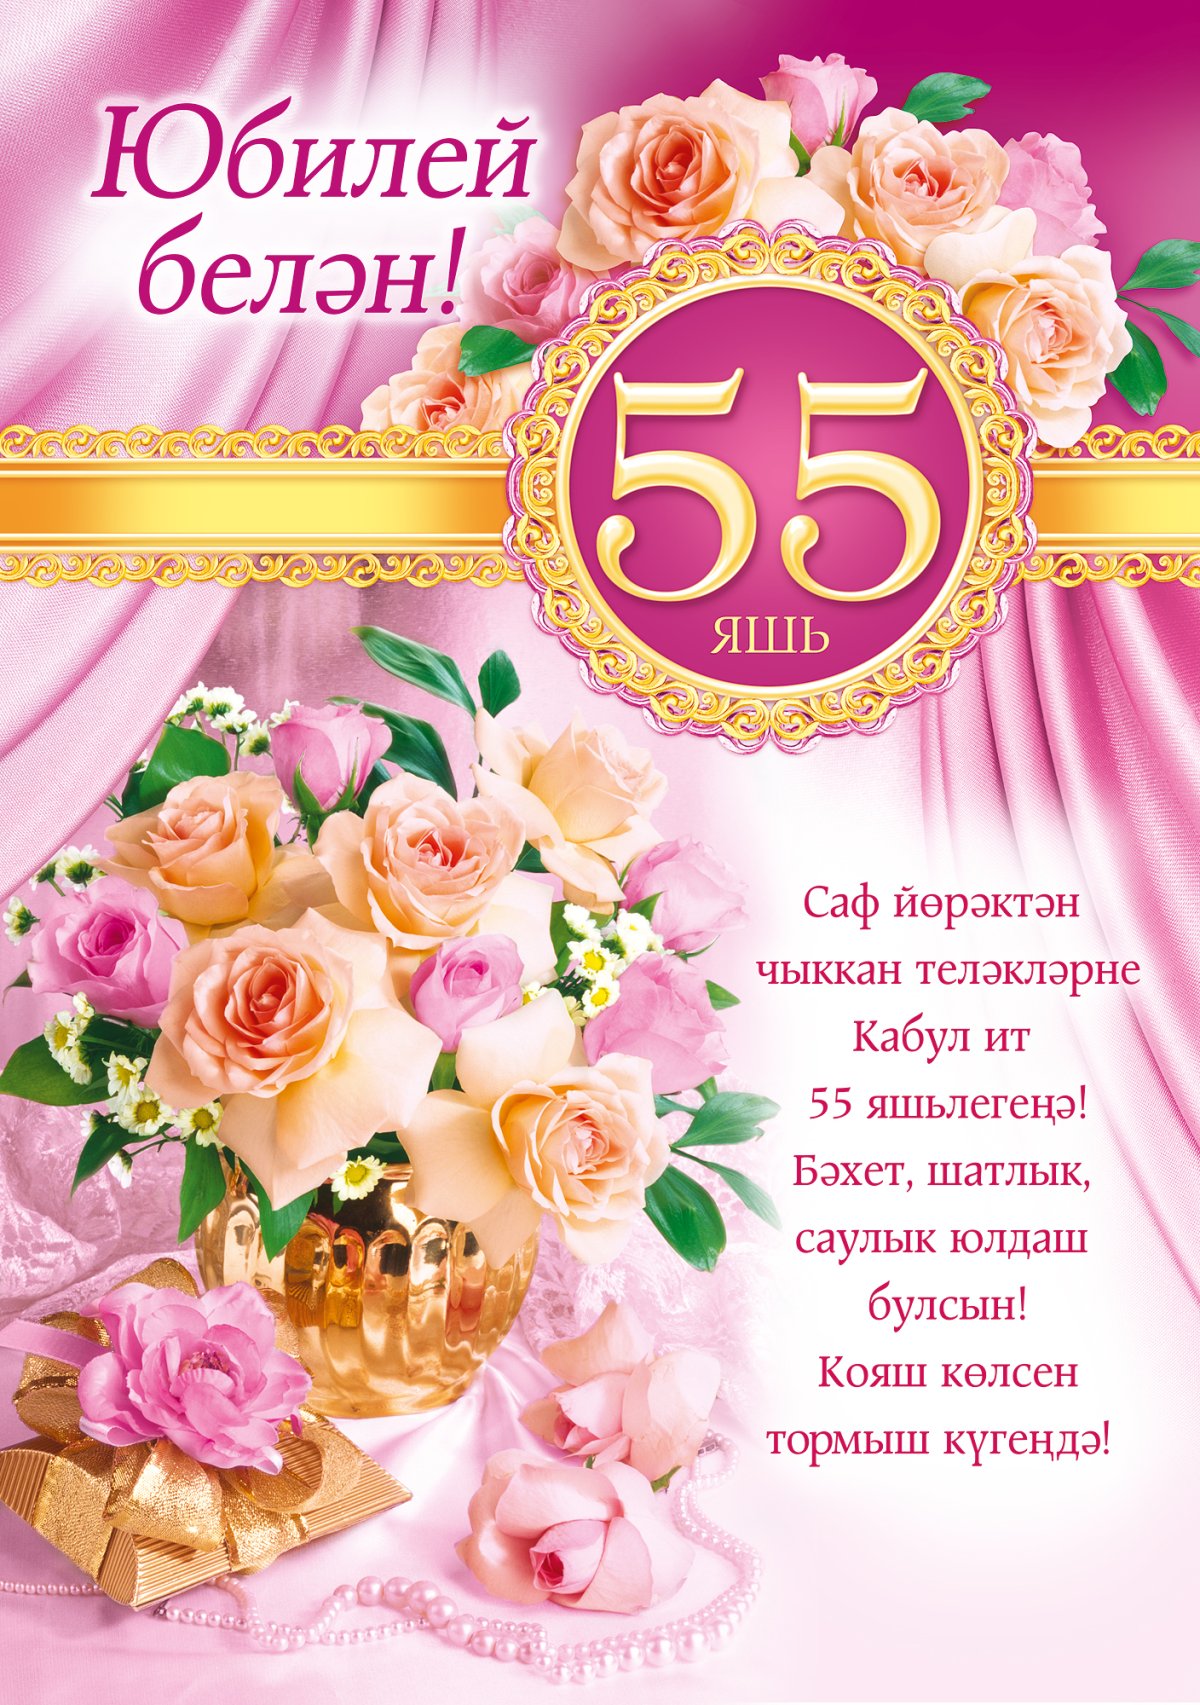 55 й день рождения Изображения – скачать бесплатно на Freepik